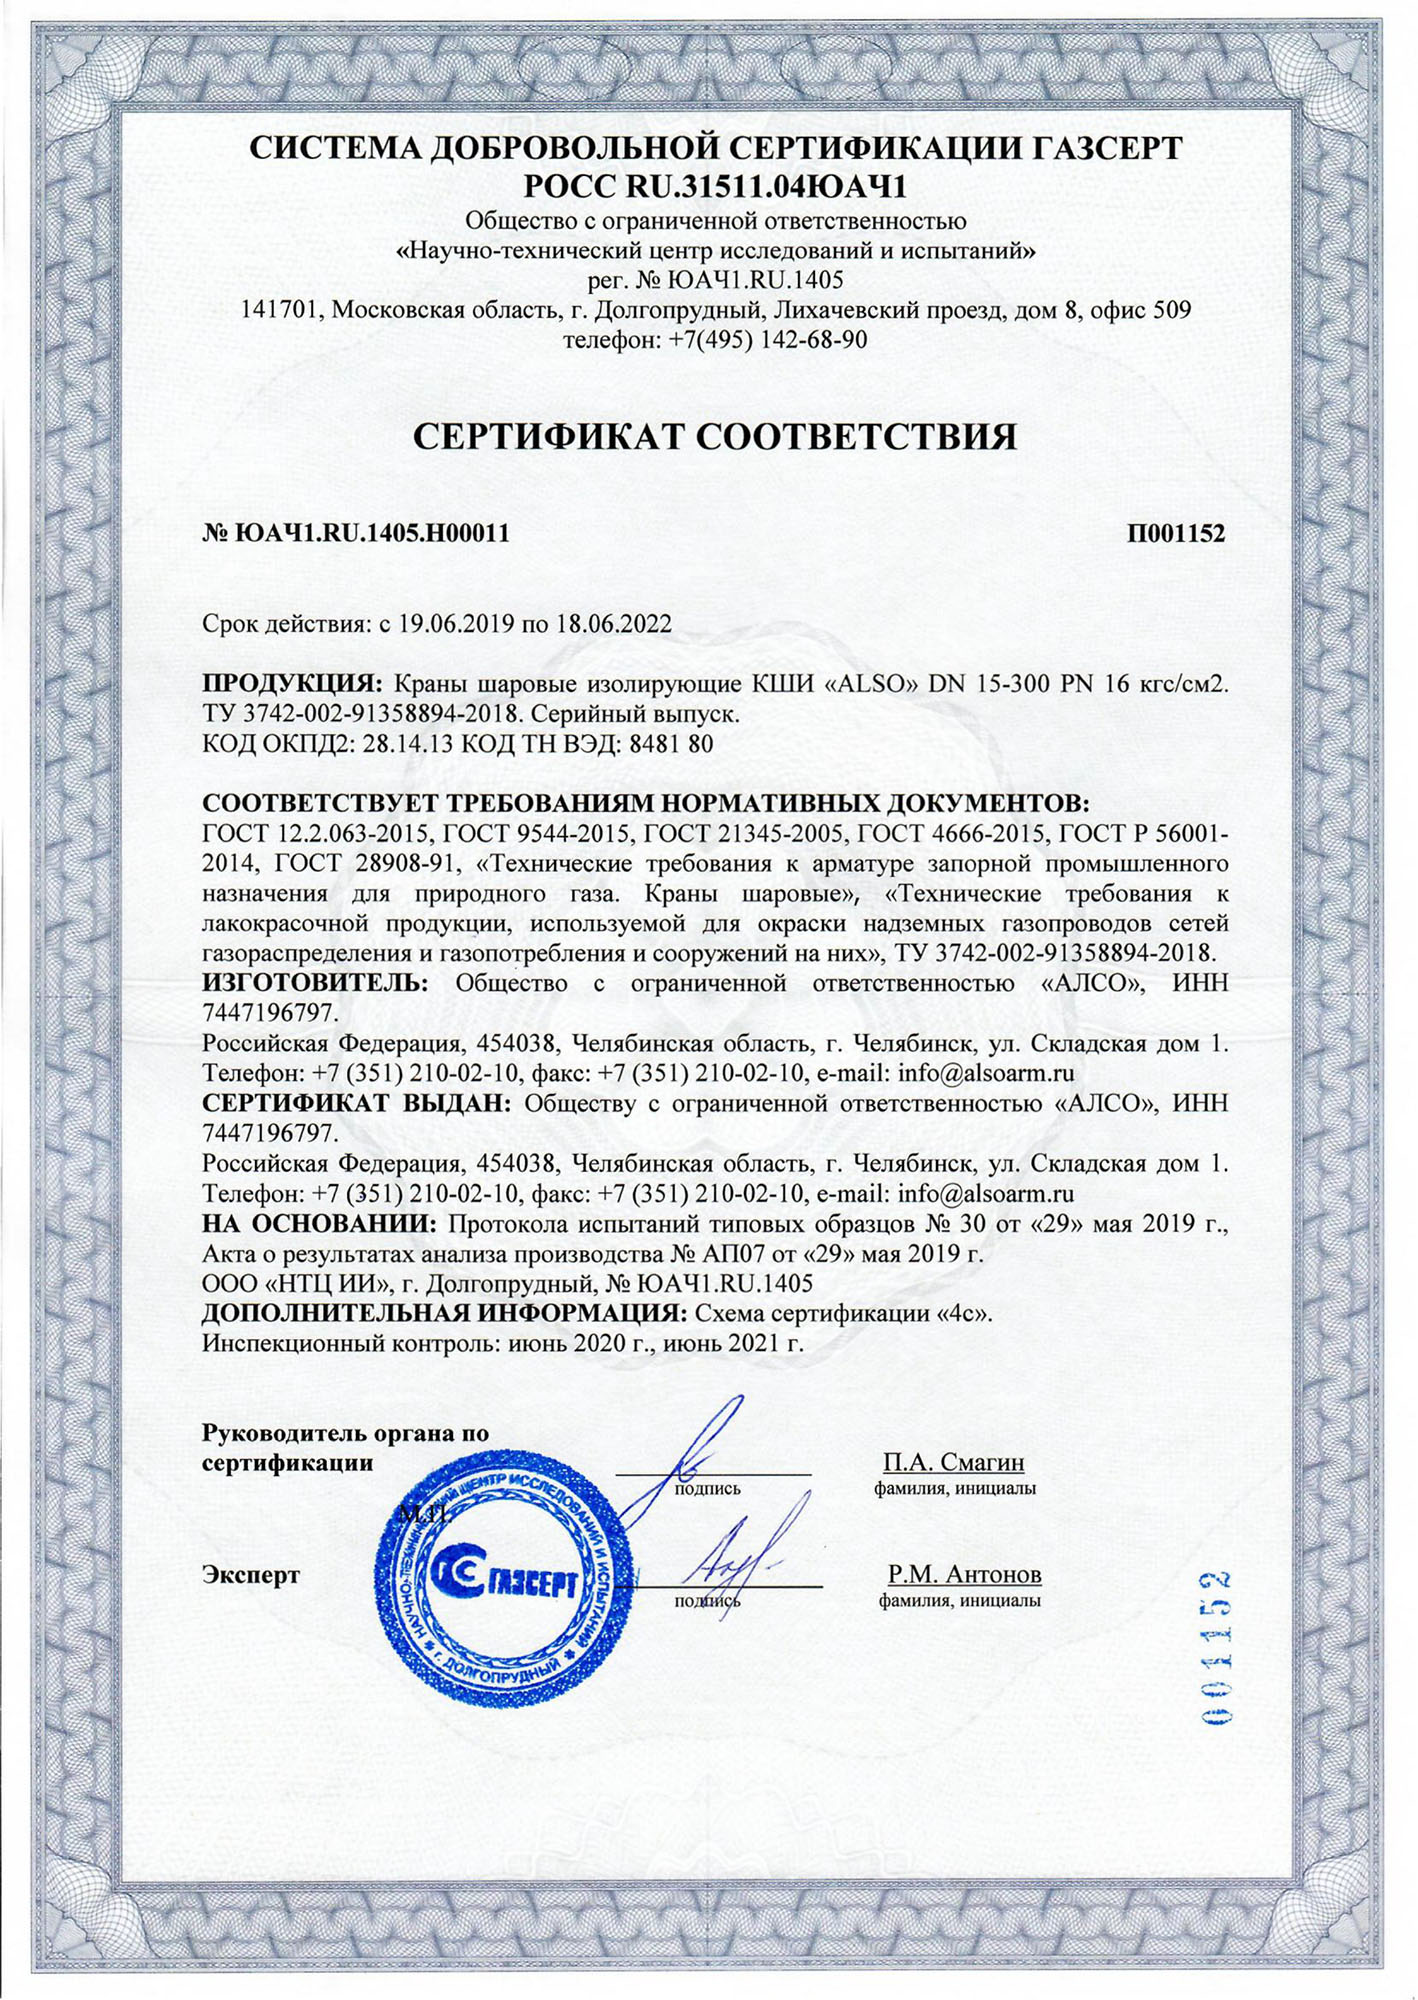 Сертификат на кран шаровый. Юач1.dk.1404.н00084. Кран шаровый Ду 15 сертификат соответствия. Сертификат соответствия ГАЗСЕРТ. Сертификат соответствия краны алсо.